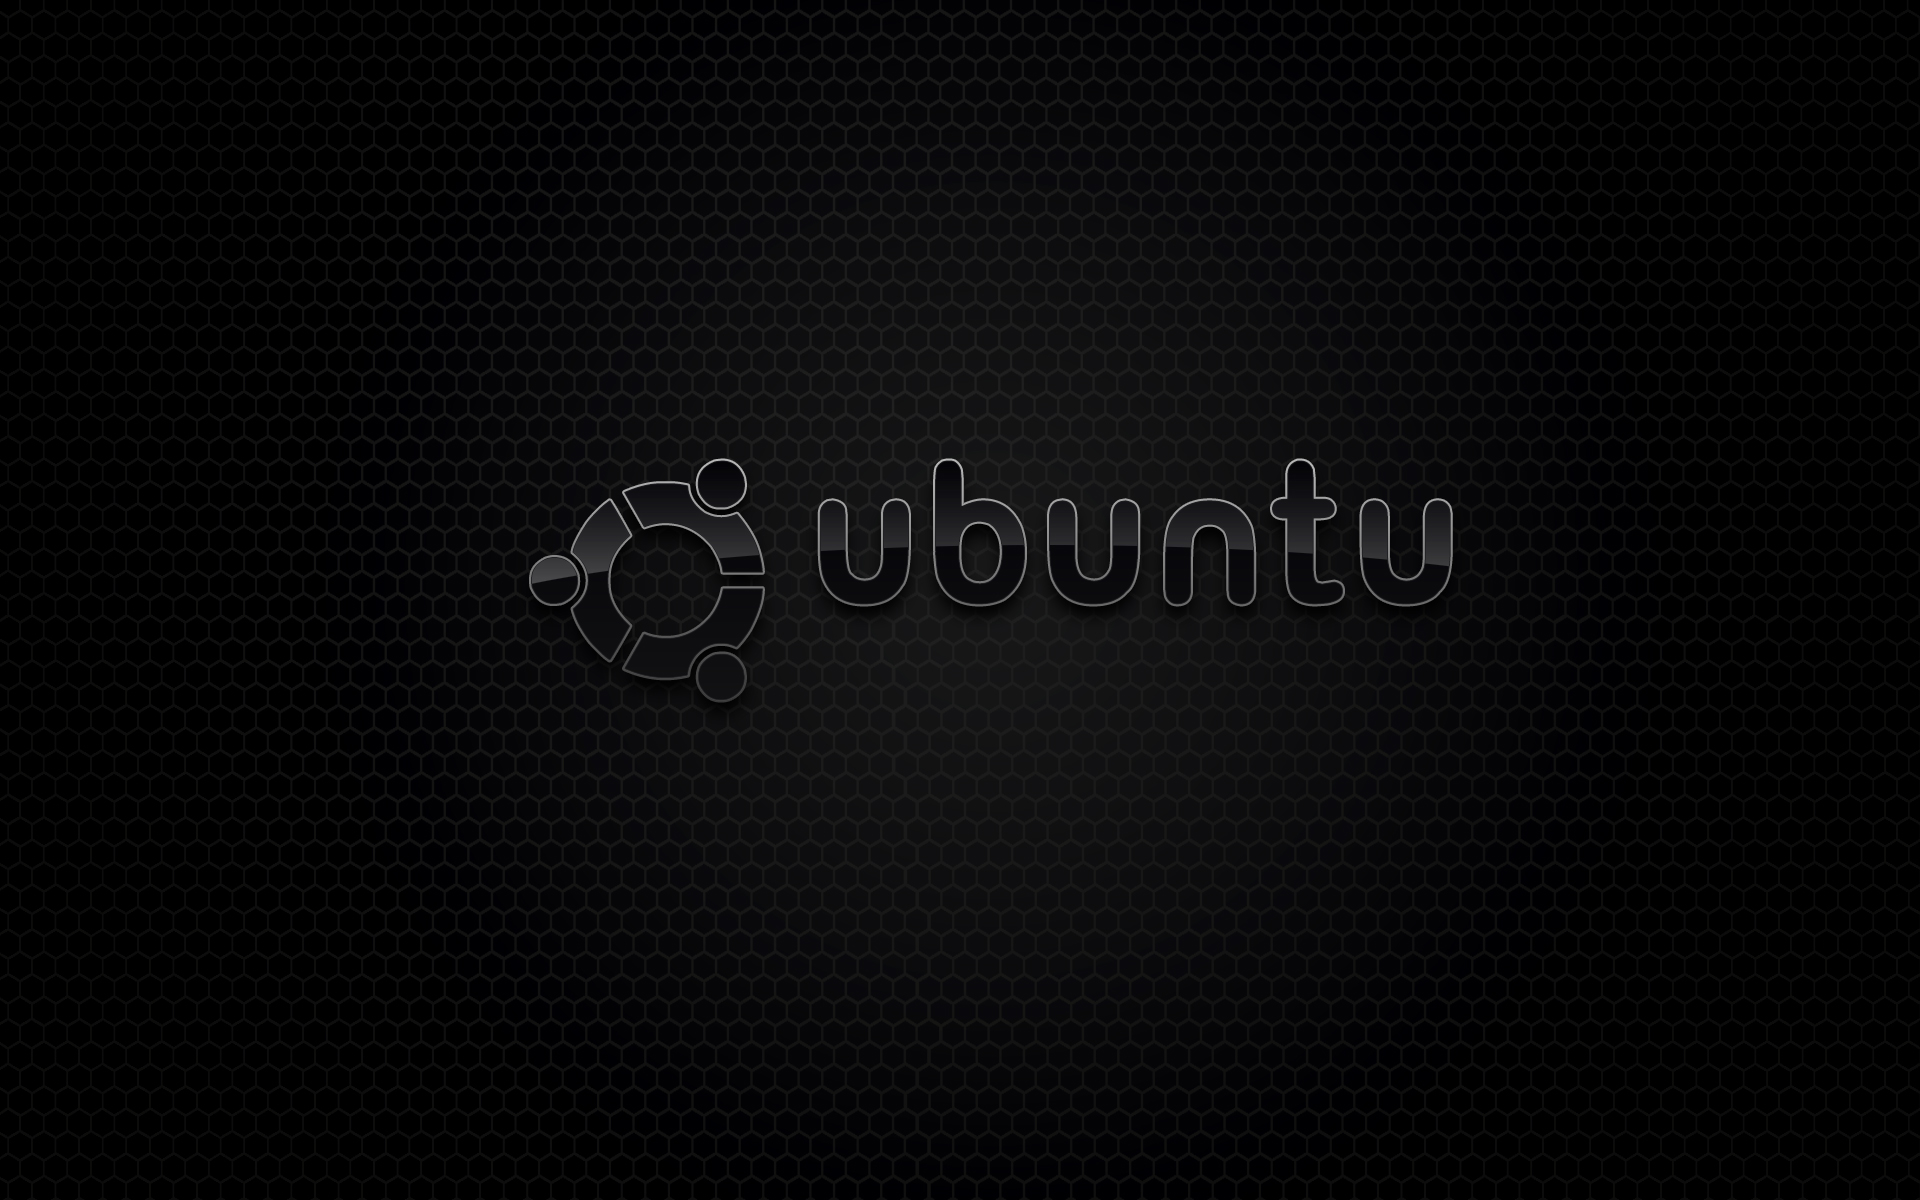 ubuntu_2_by_mullet-d39kerm.jpg